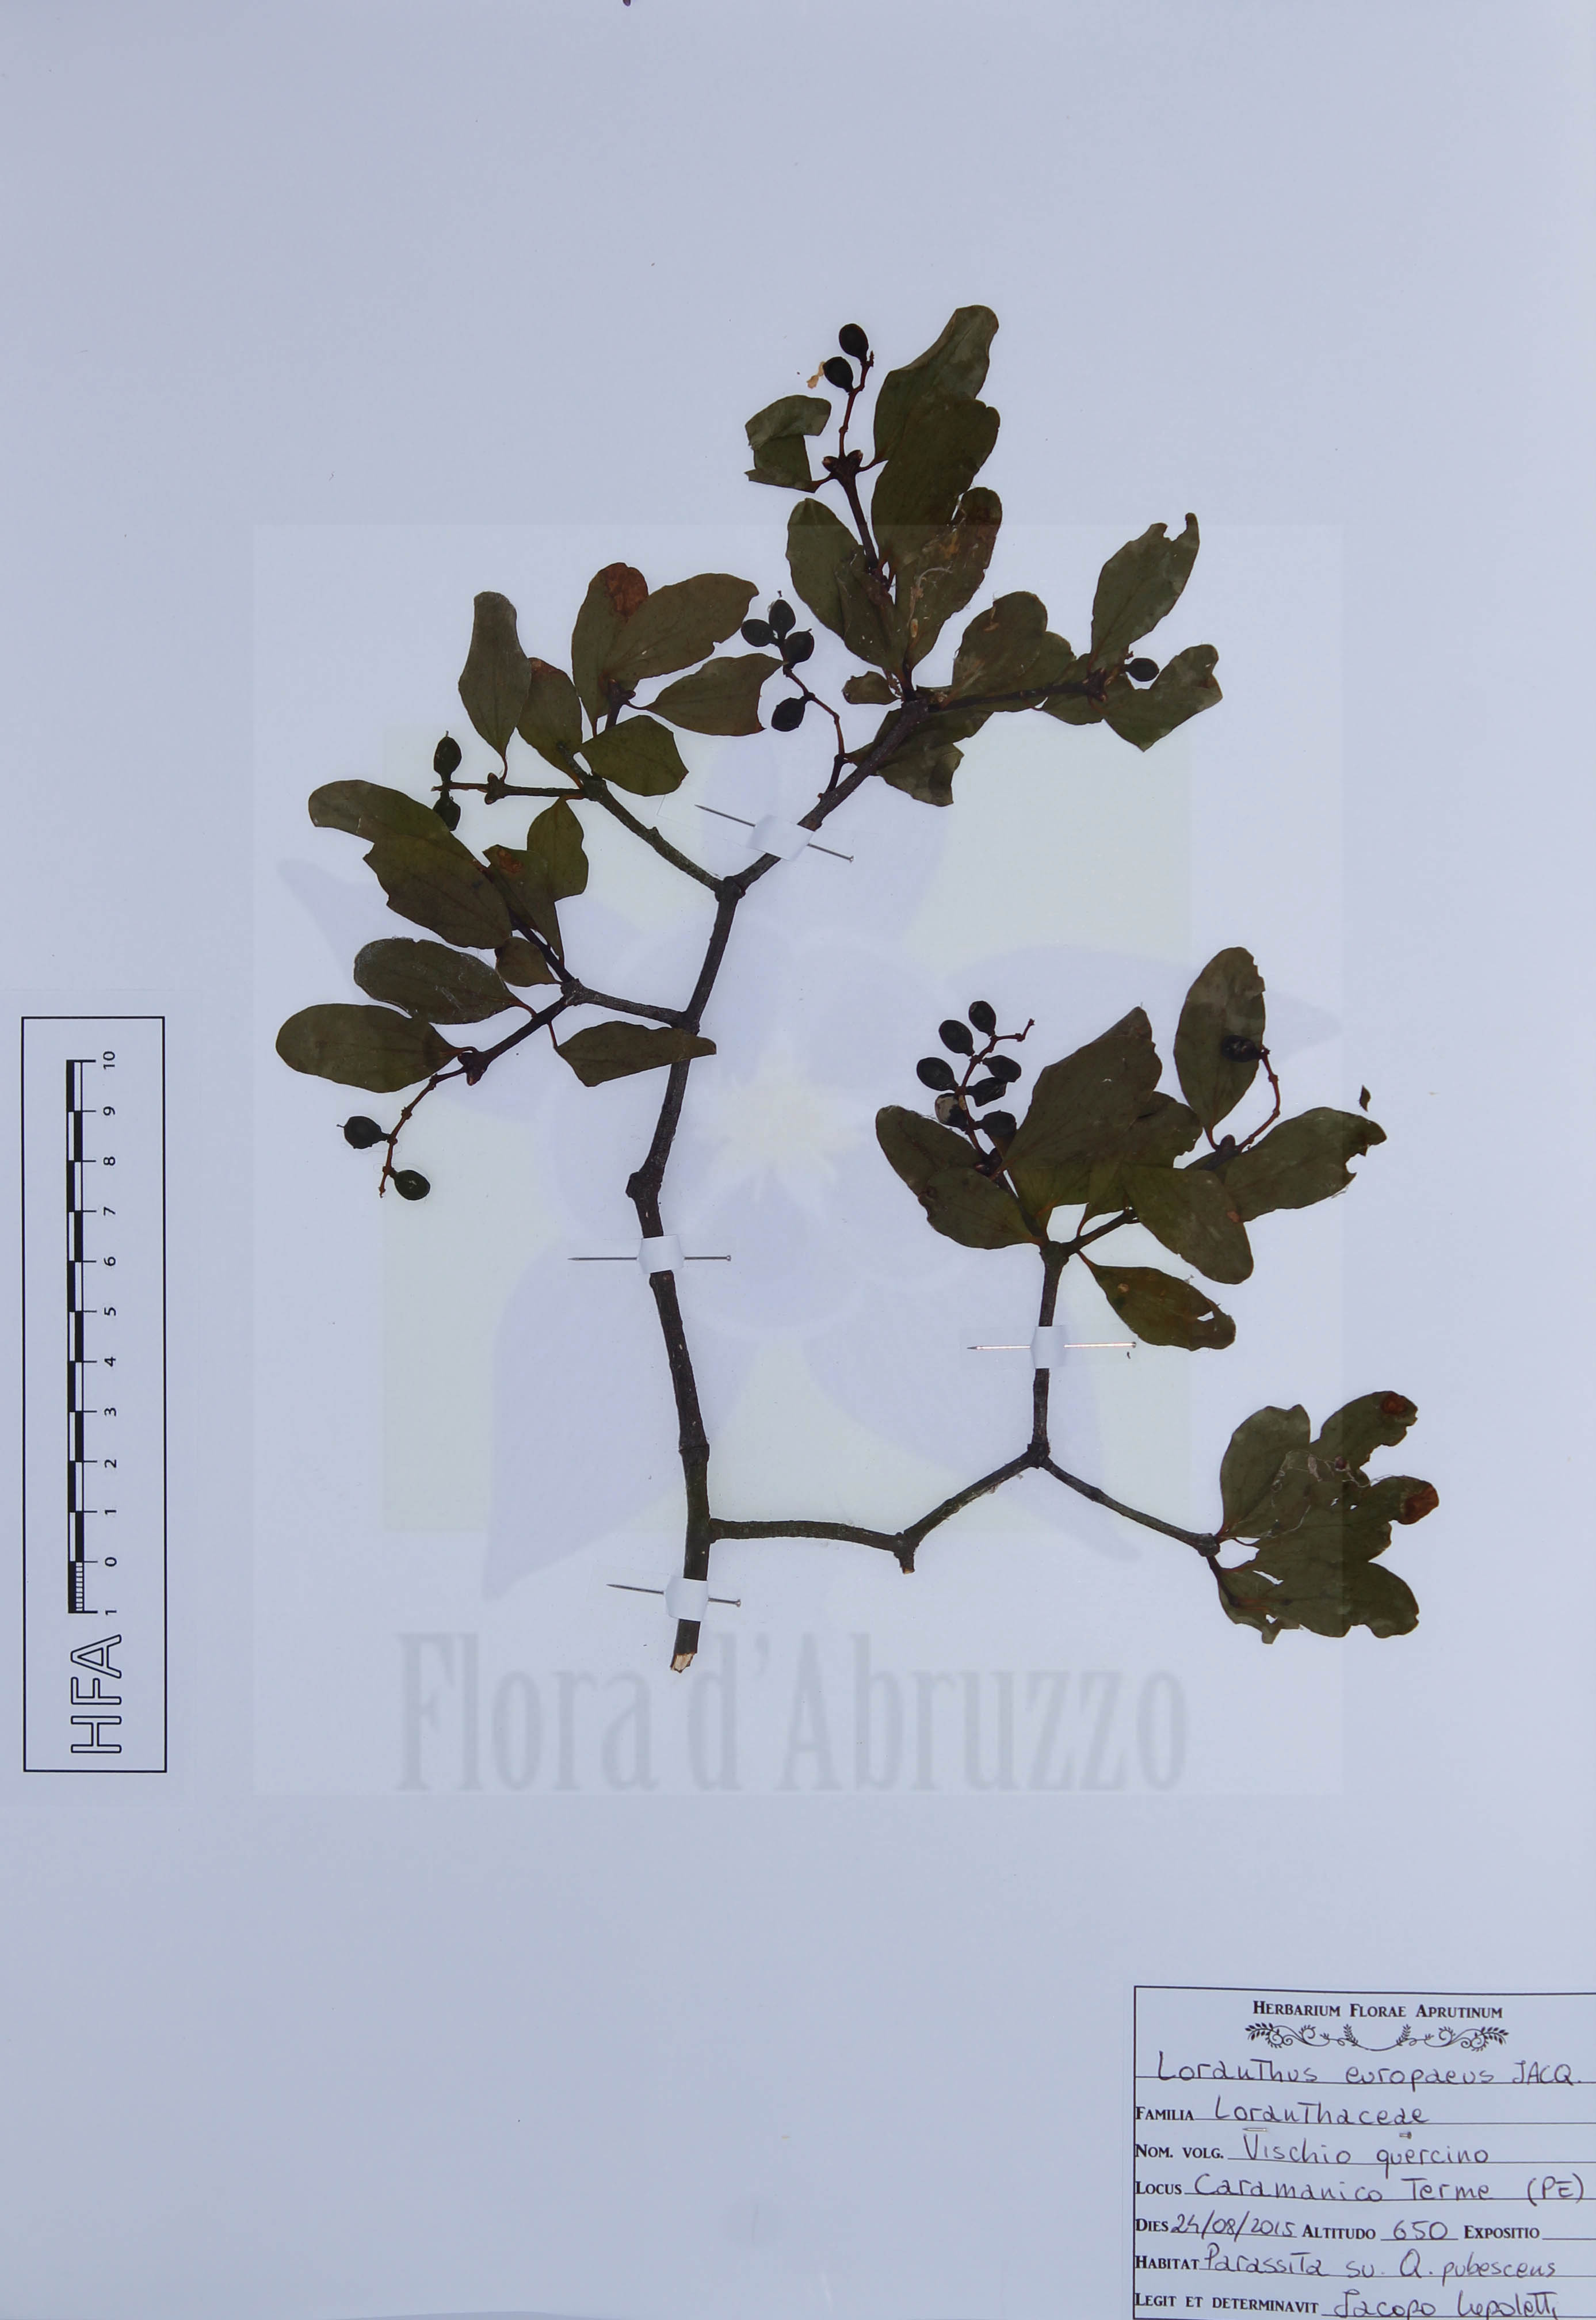 Loranthus europaeus Jacq.